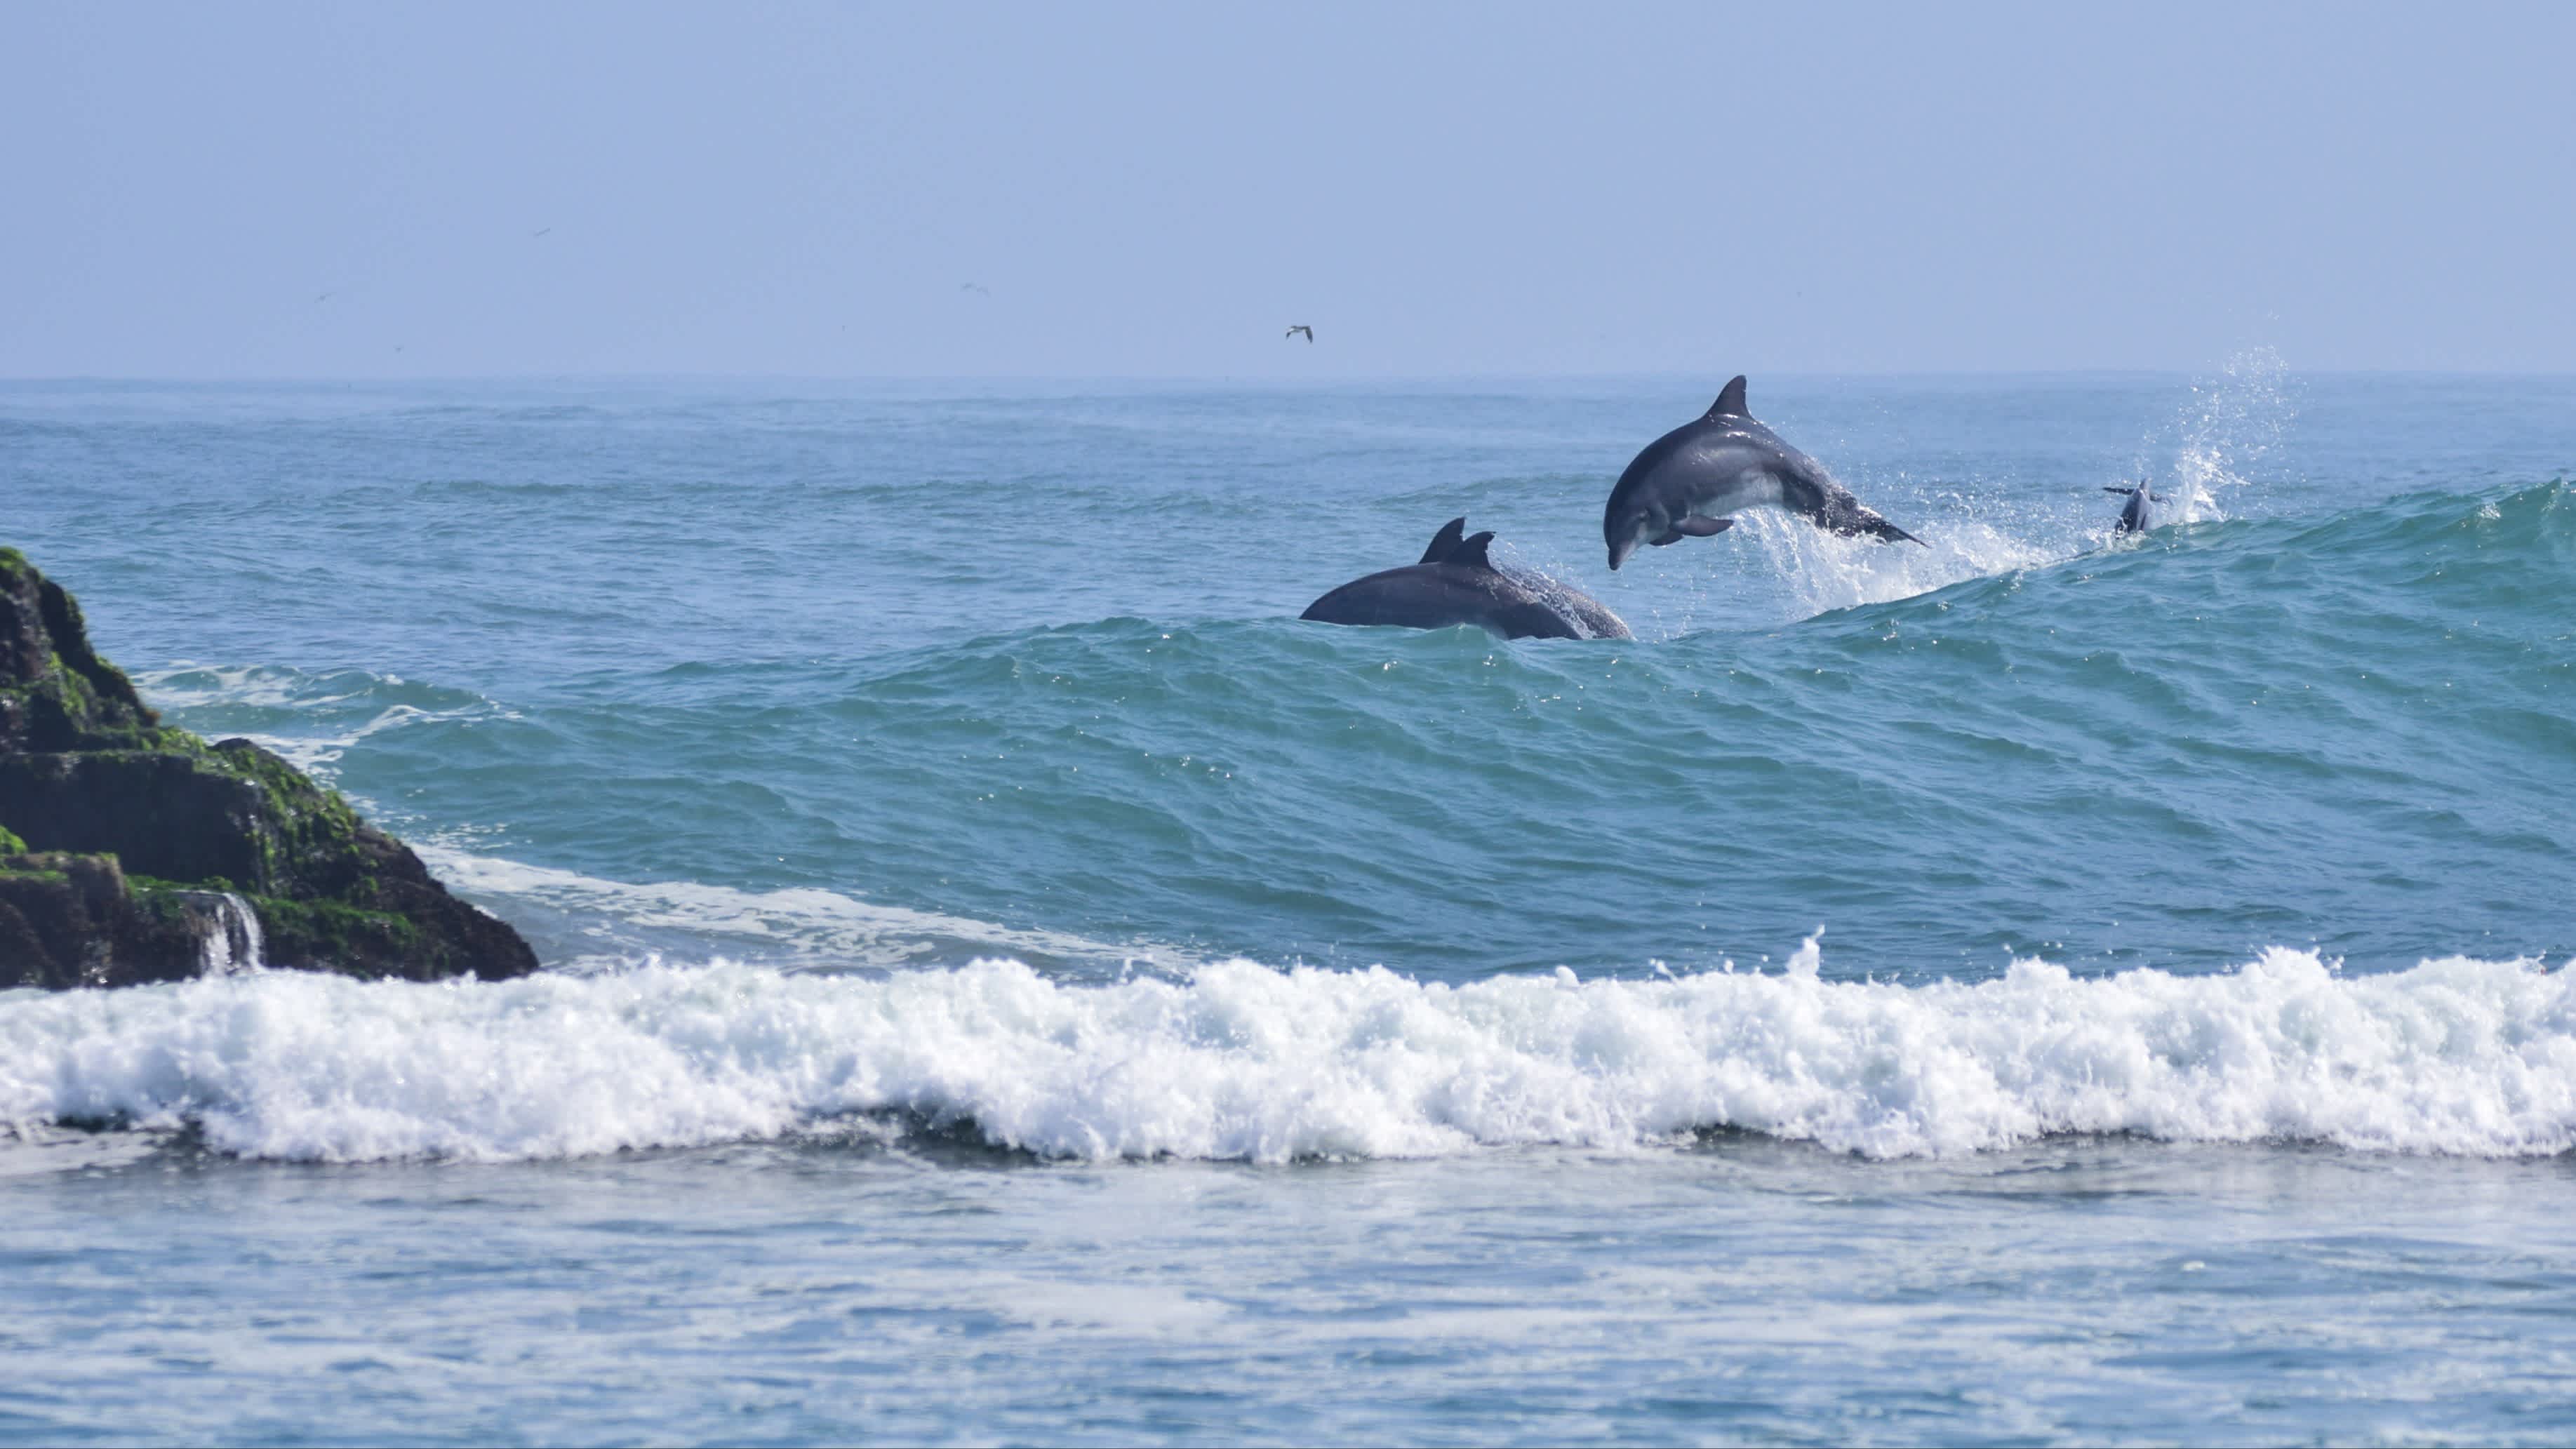 Das Surferparadies Cerro Azul in Peru mit Delfinen, die in den azurblauen Wellen surfen und springen sowie Felsen am Rand der Bucht.